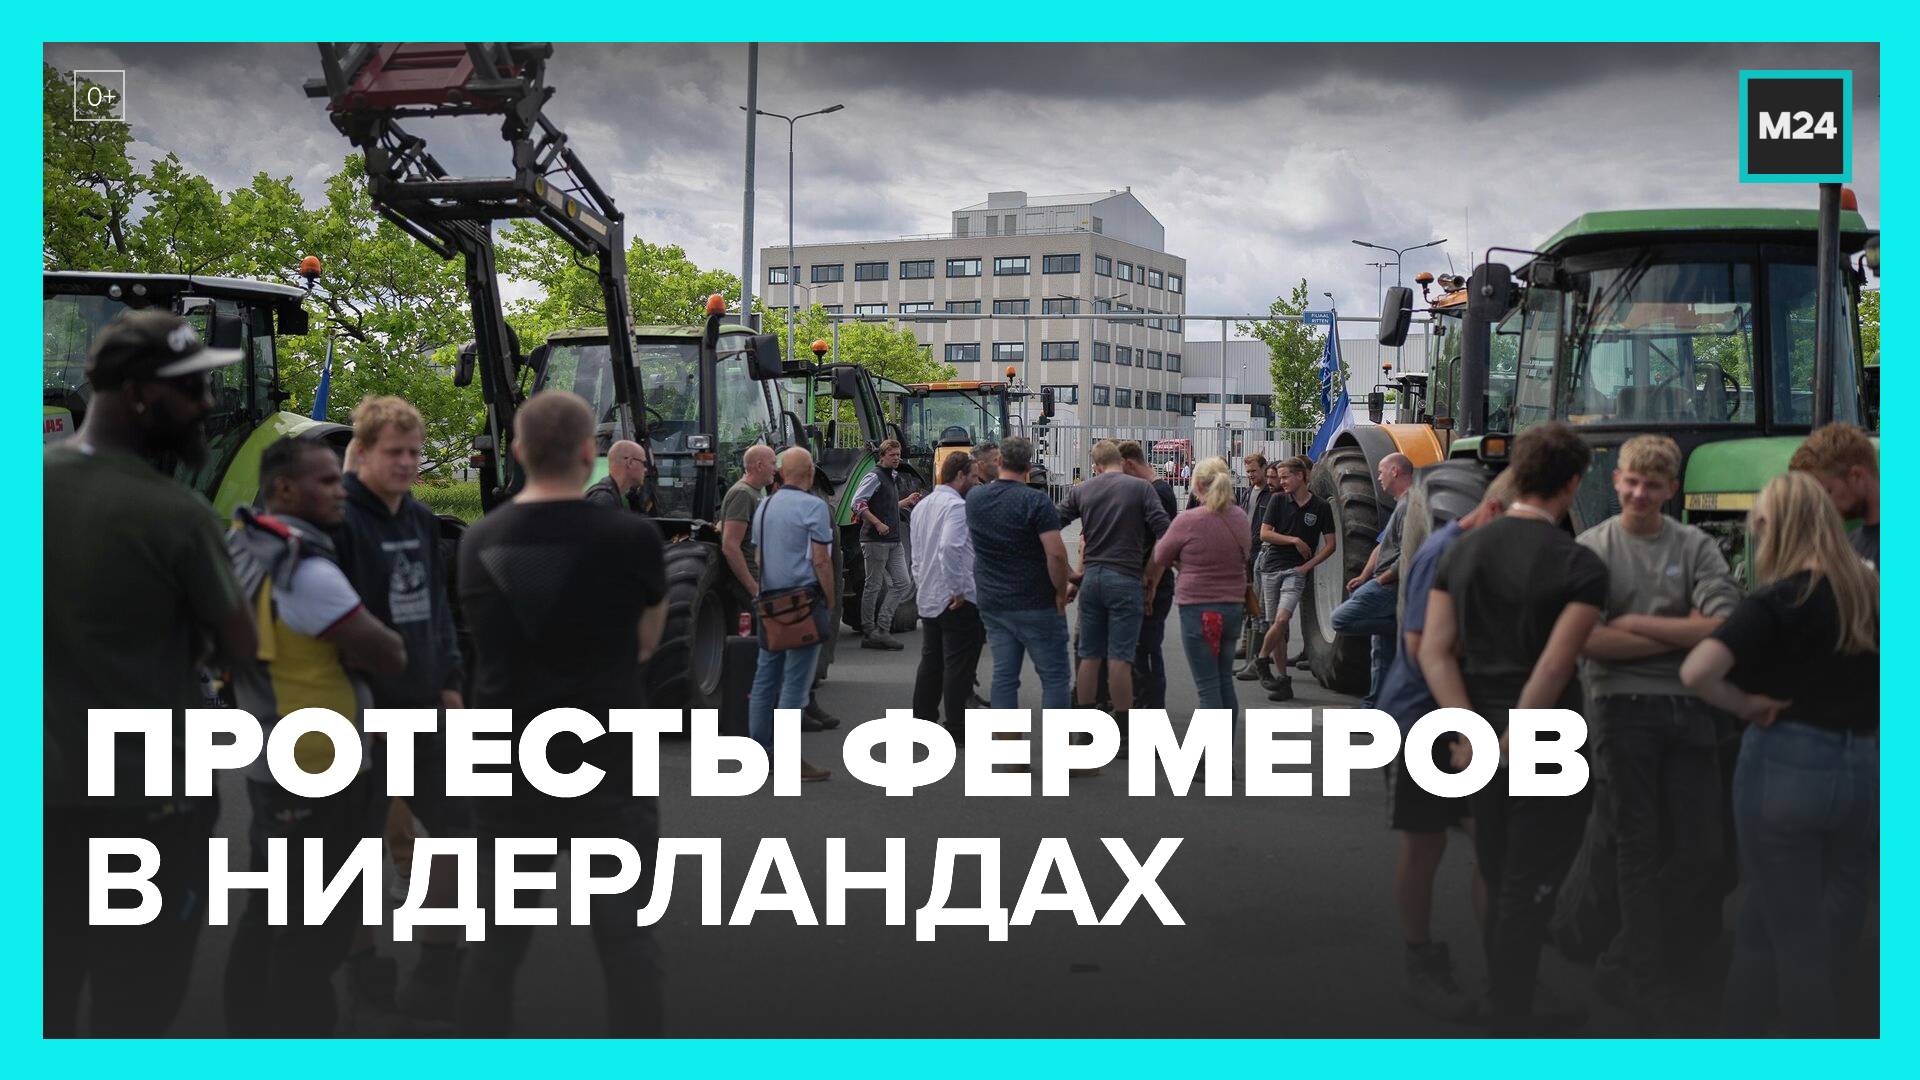 В Нидерландах протестуют фермеры - Москва 24